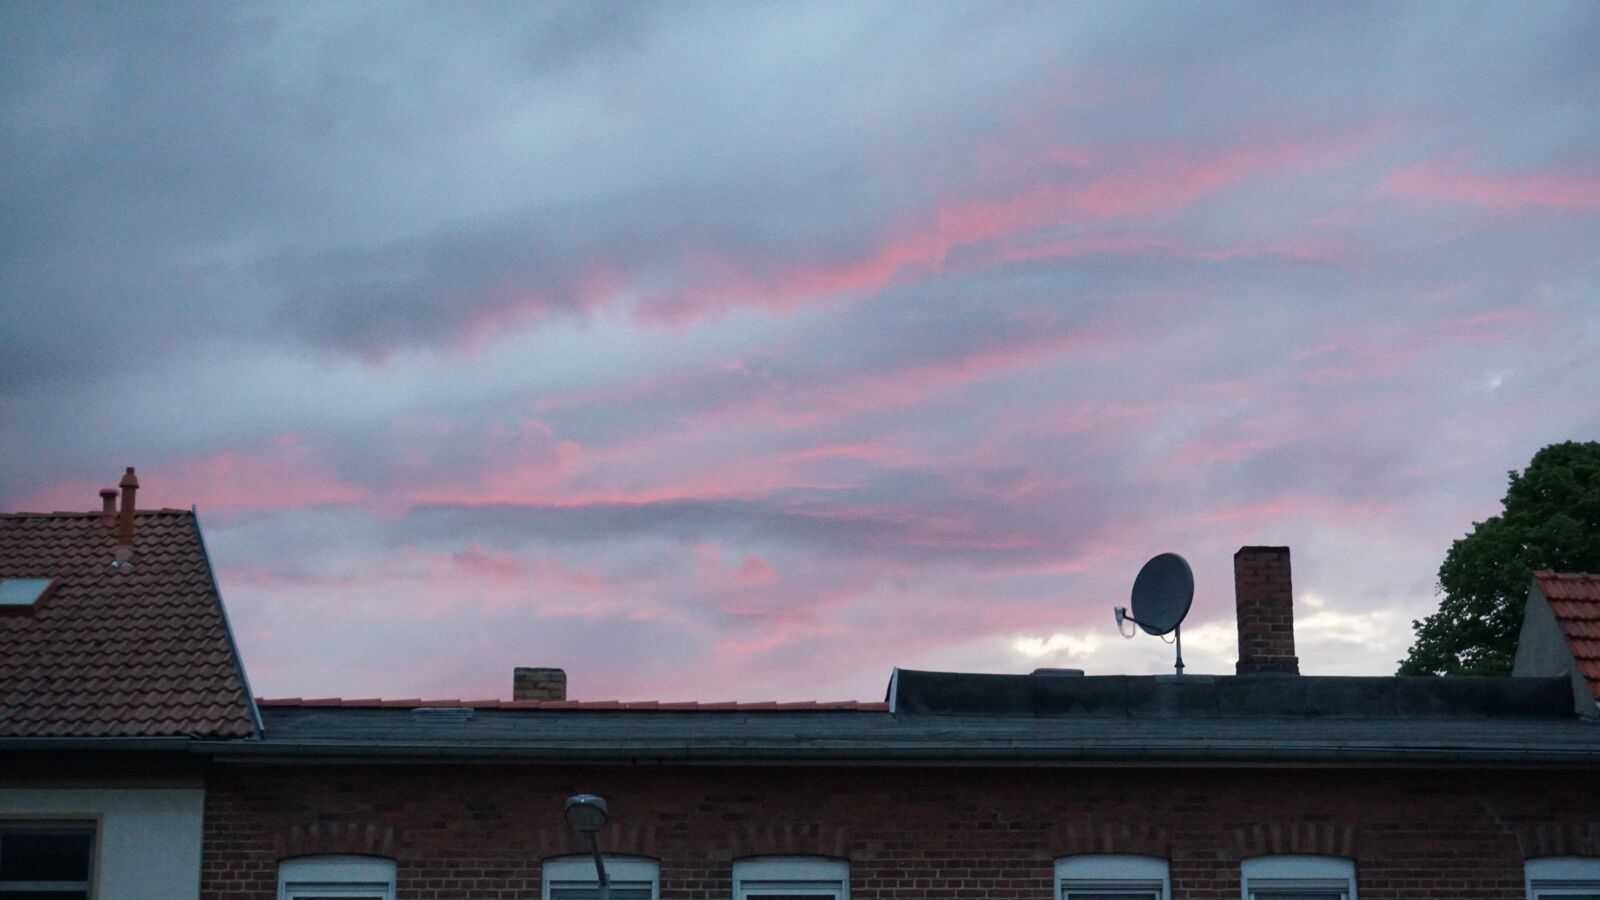 Sony a6300 sample photo. Sky, sunset, pink sky photography